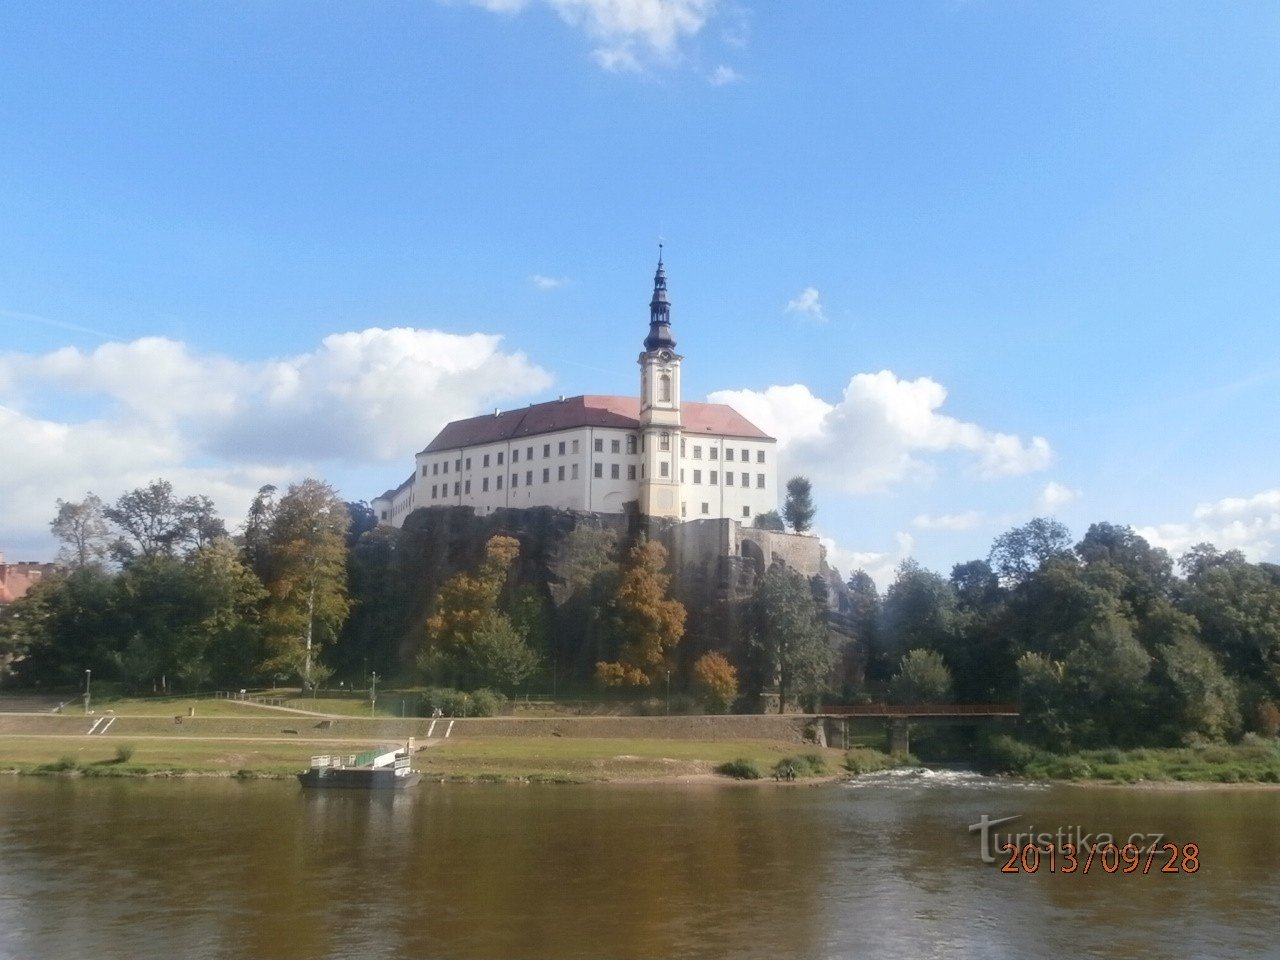 Děčín: ZOO und Schloss